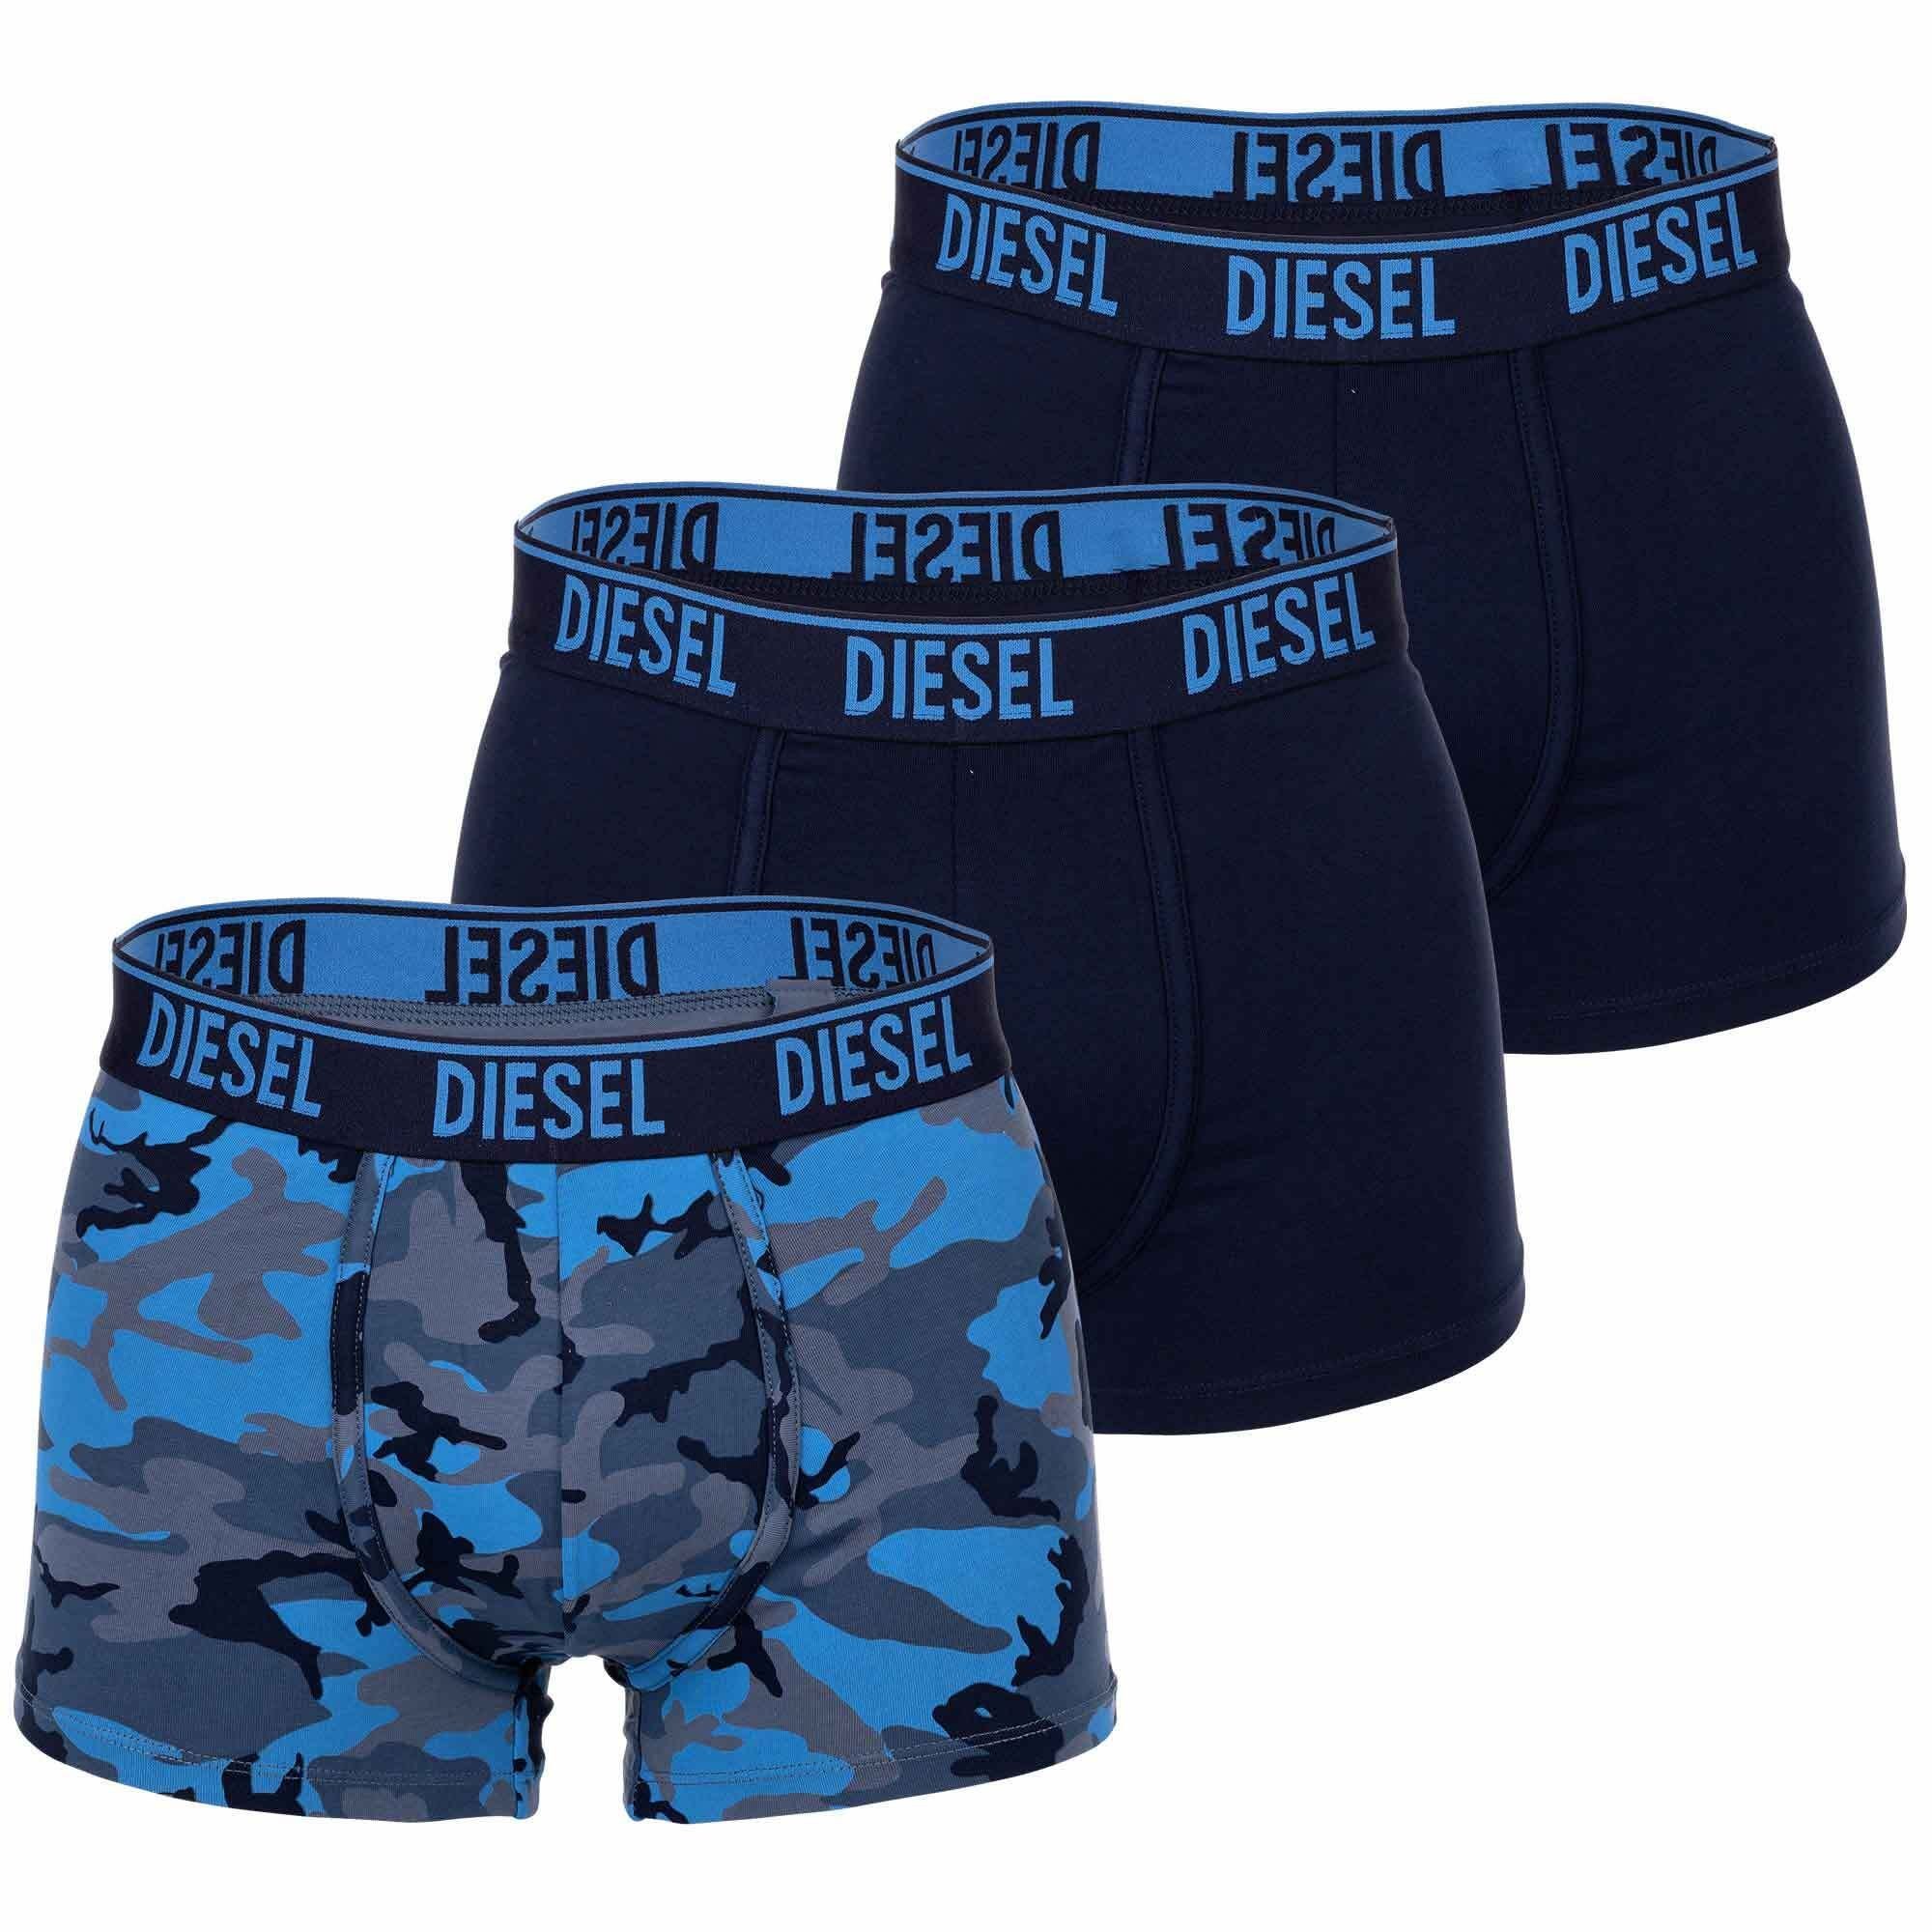 Herren Blau Boxer 3er Boxershorts, Diesel Pack -